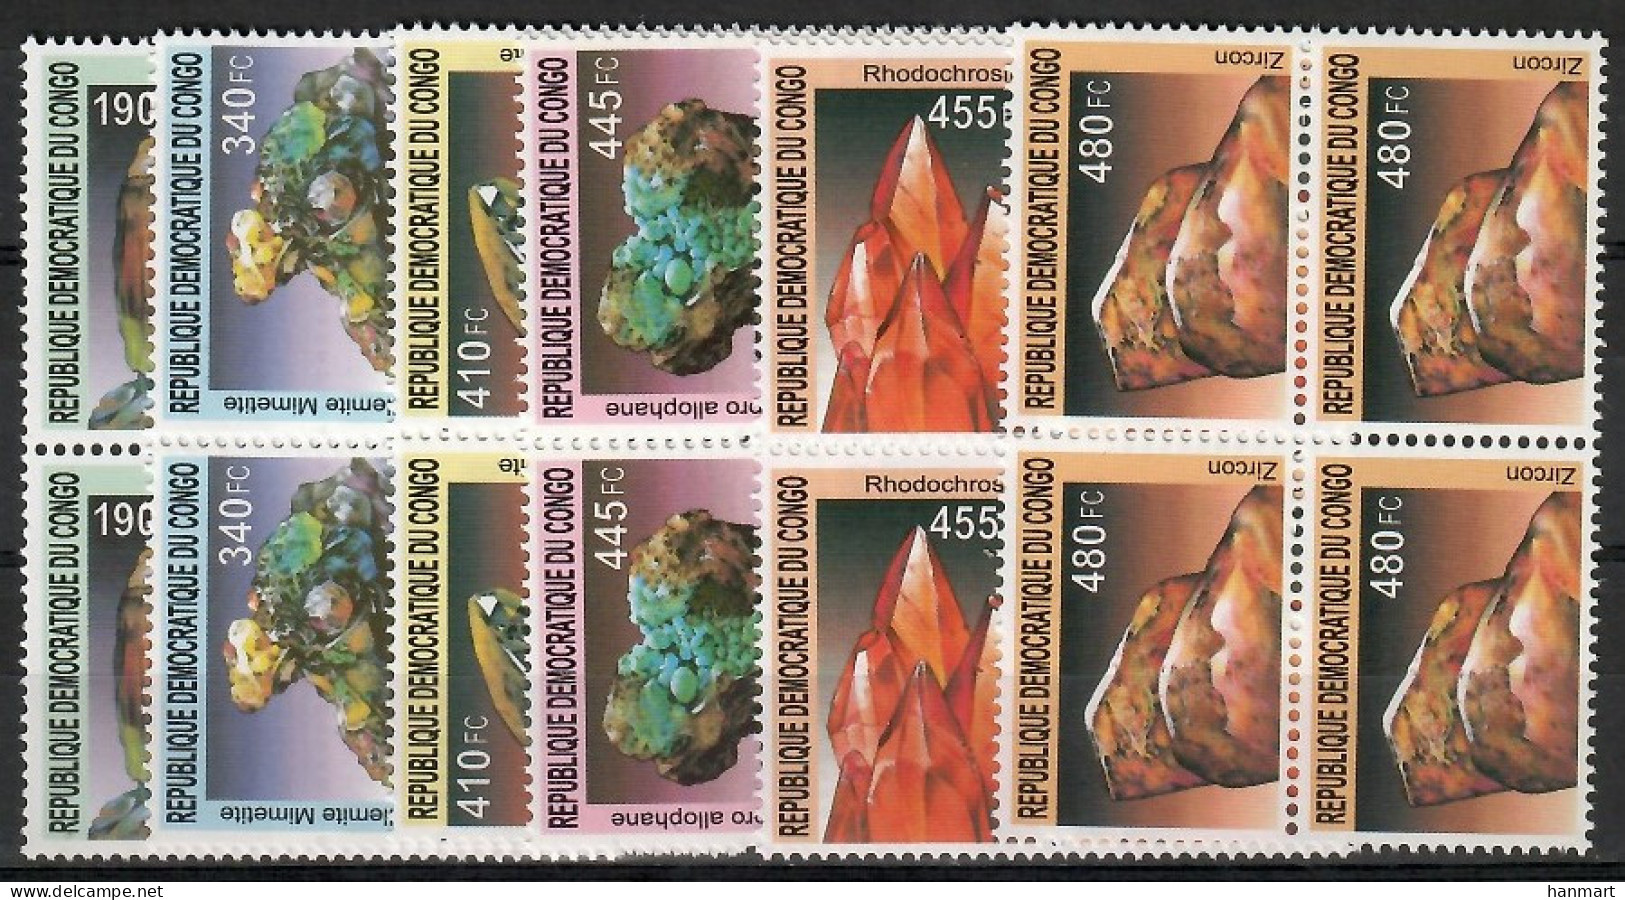 Congo, Democratic Republic (Kinshasa) 2002 Mi 1713-1718 MNH  (ZS6 ZREvie1713-1718) - Minerals